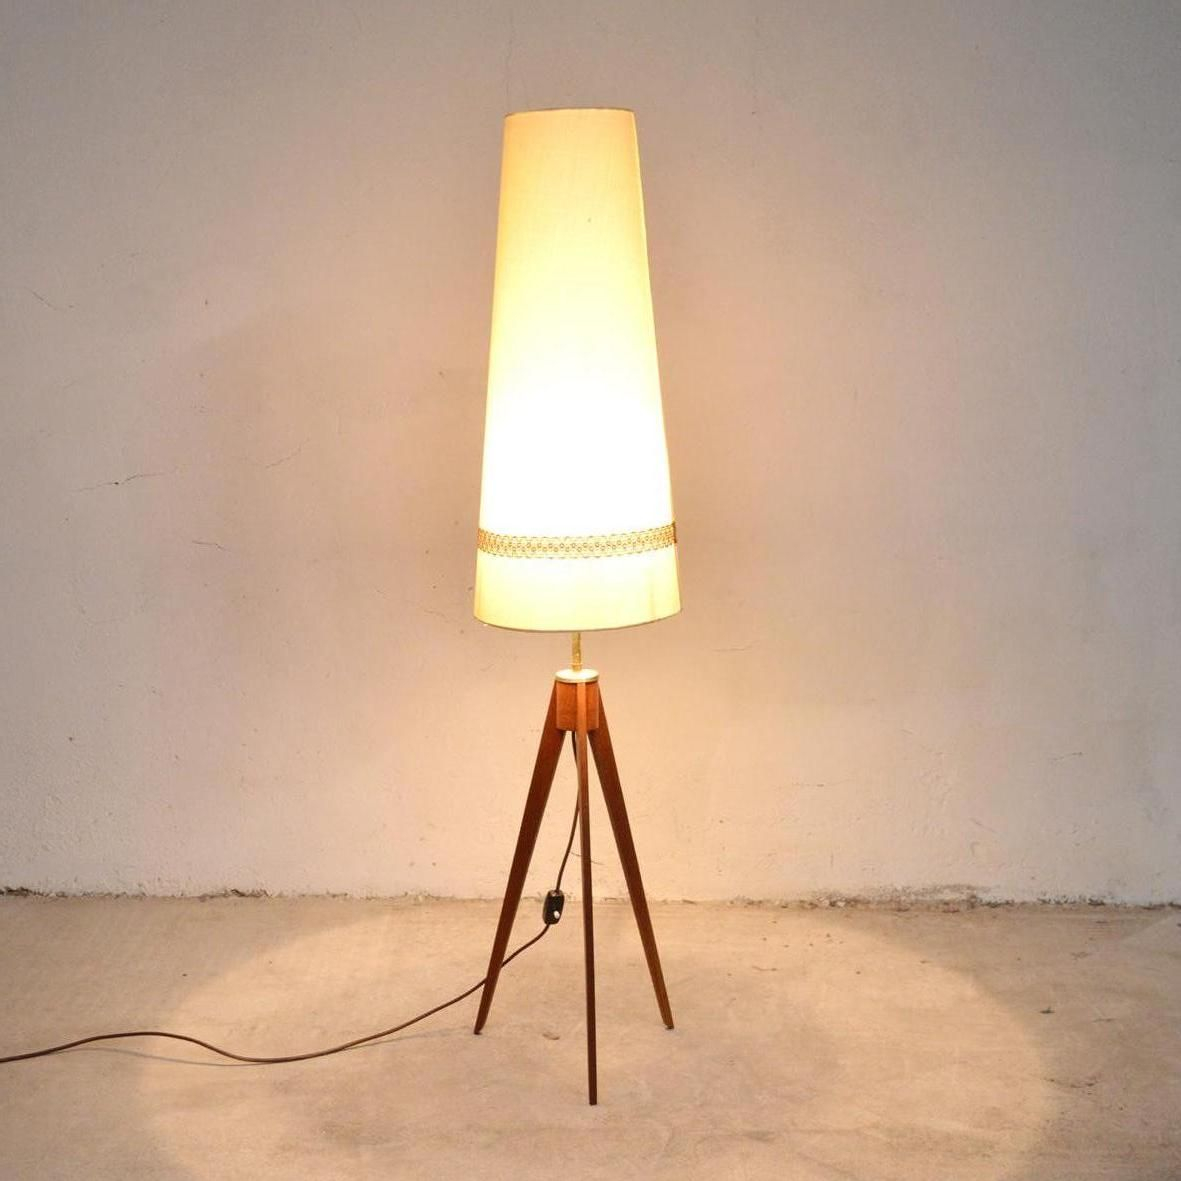 Teak Tripod Floor Lamp 1960s regarding size 1181 X 1181